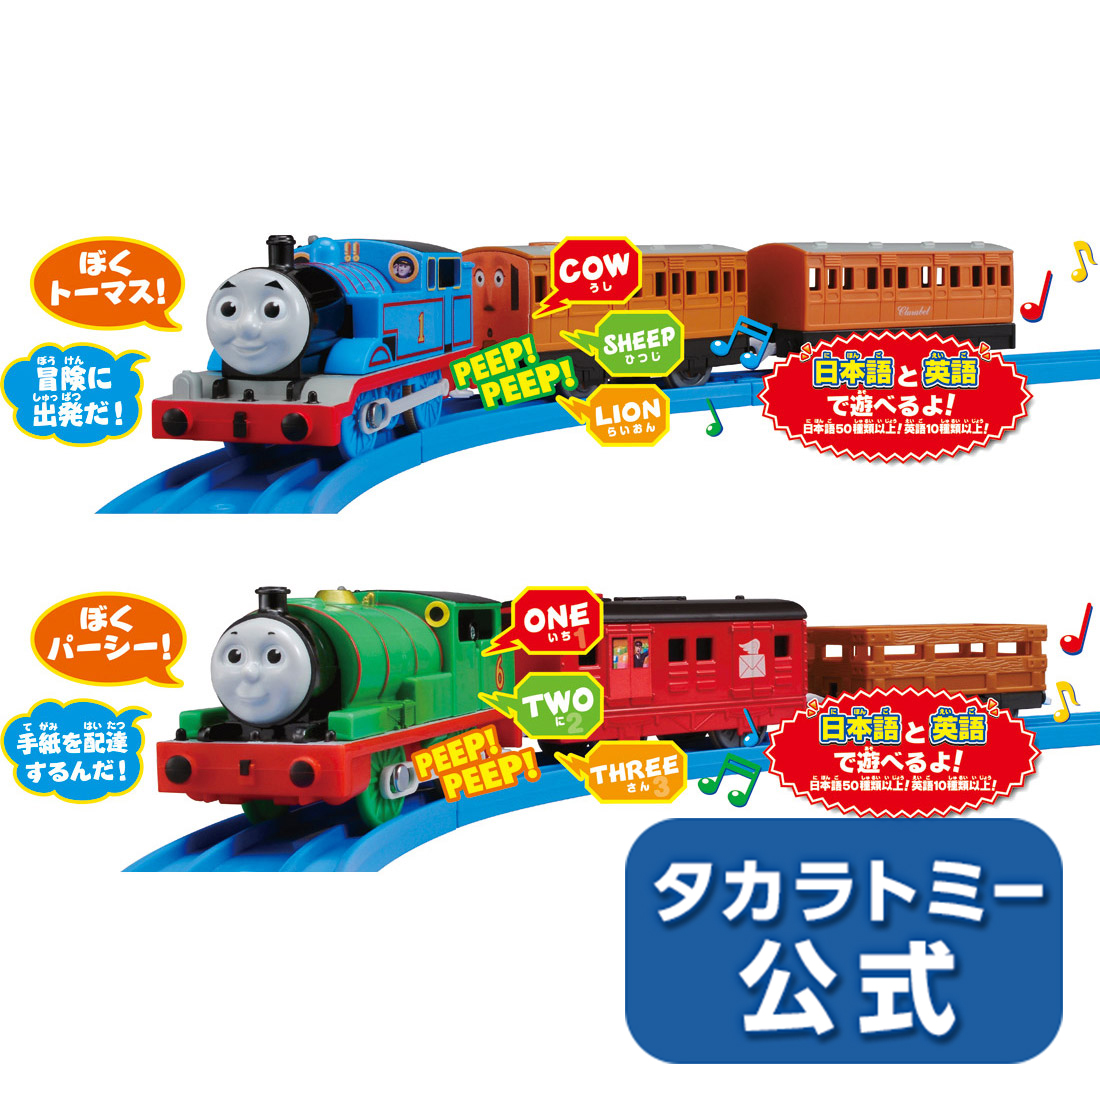 【プラレール OT-01-02おしゃべりトｰマス+おしゃべりパｰシｰえいごプラスセット プラレール タカラトミー 電車 新幹線 列車  乗り物 おもちゃ こども 子供 ギフト プレゼント タカラトミーモール